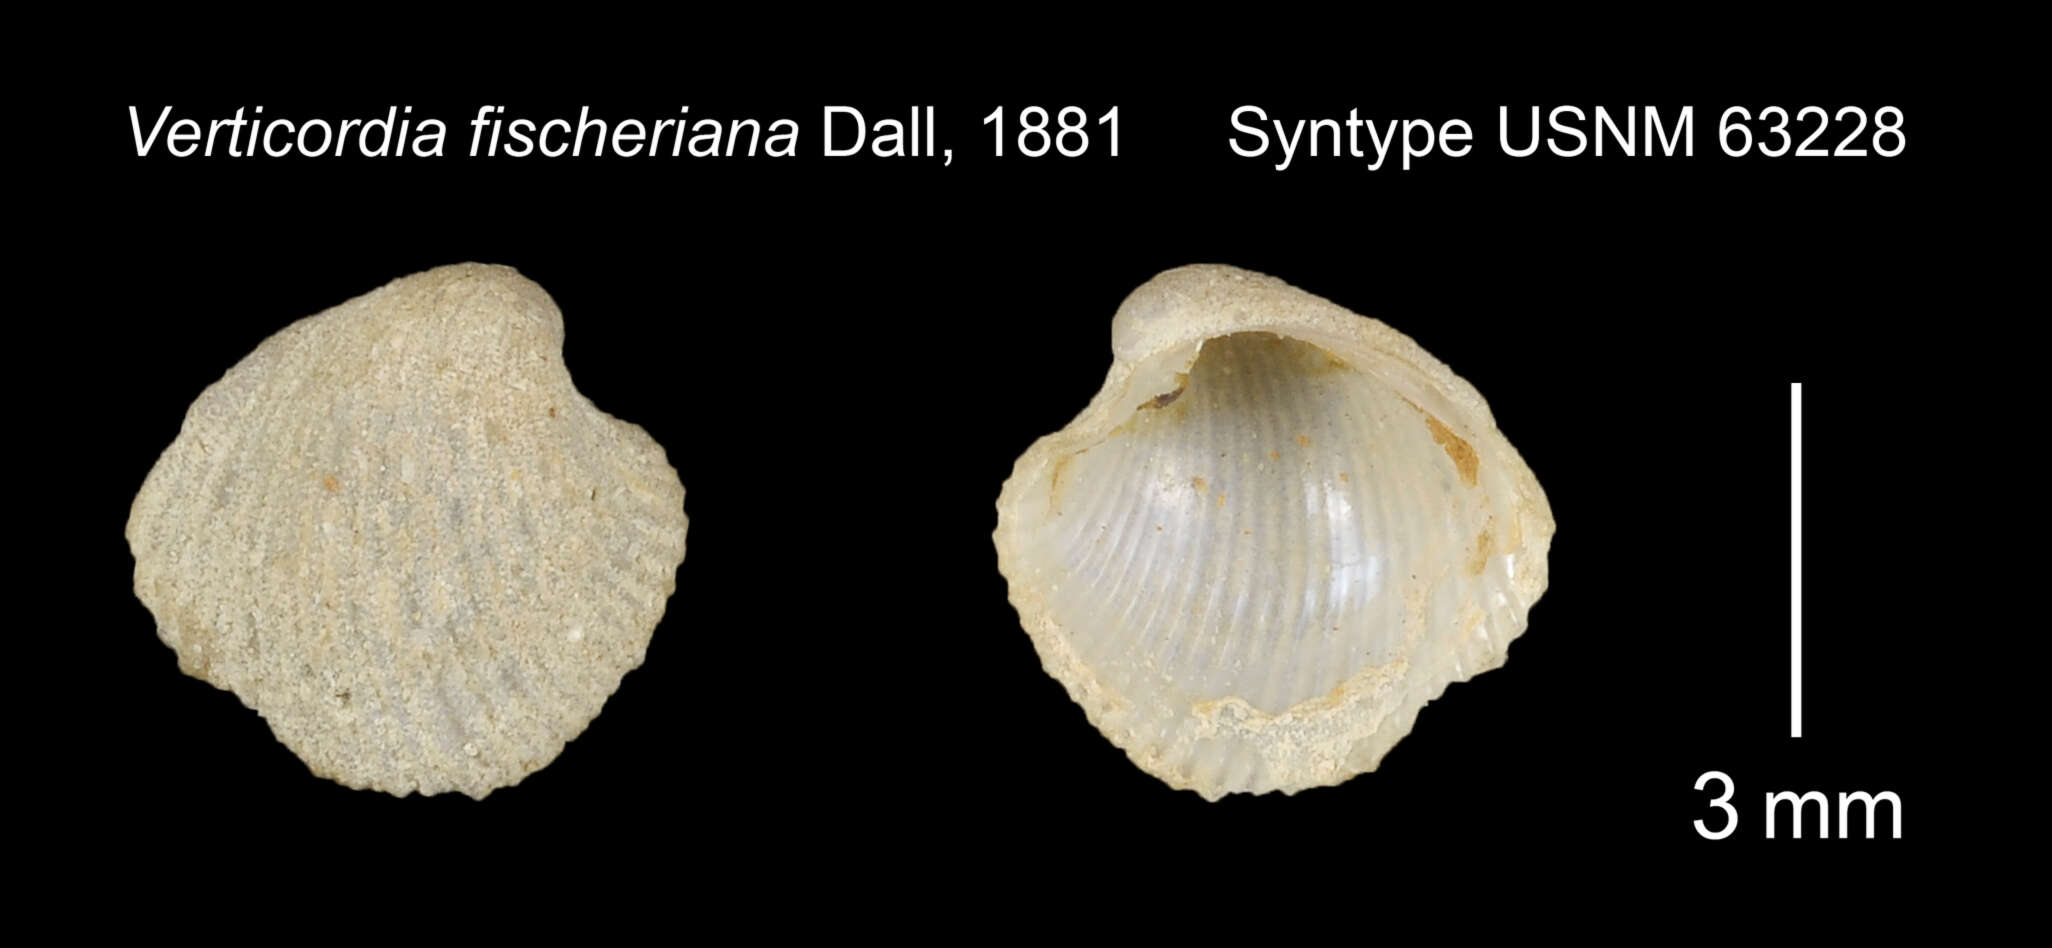 Image of Verticordia fischeriana Dall 1881